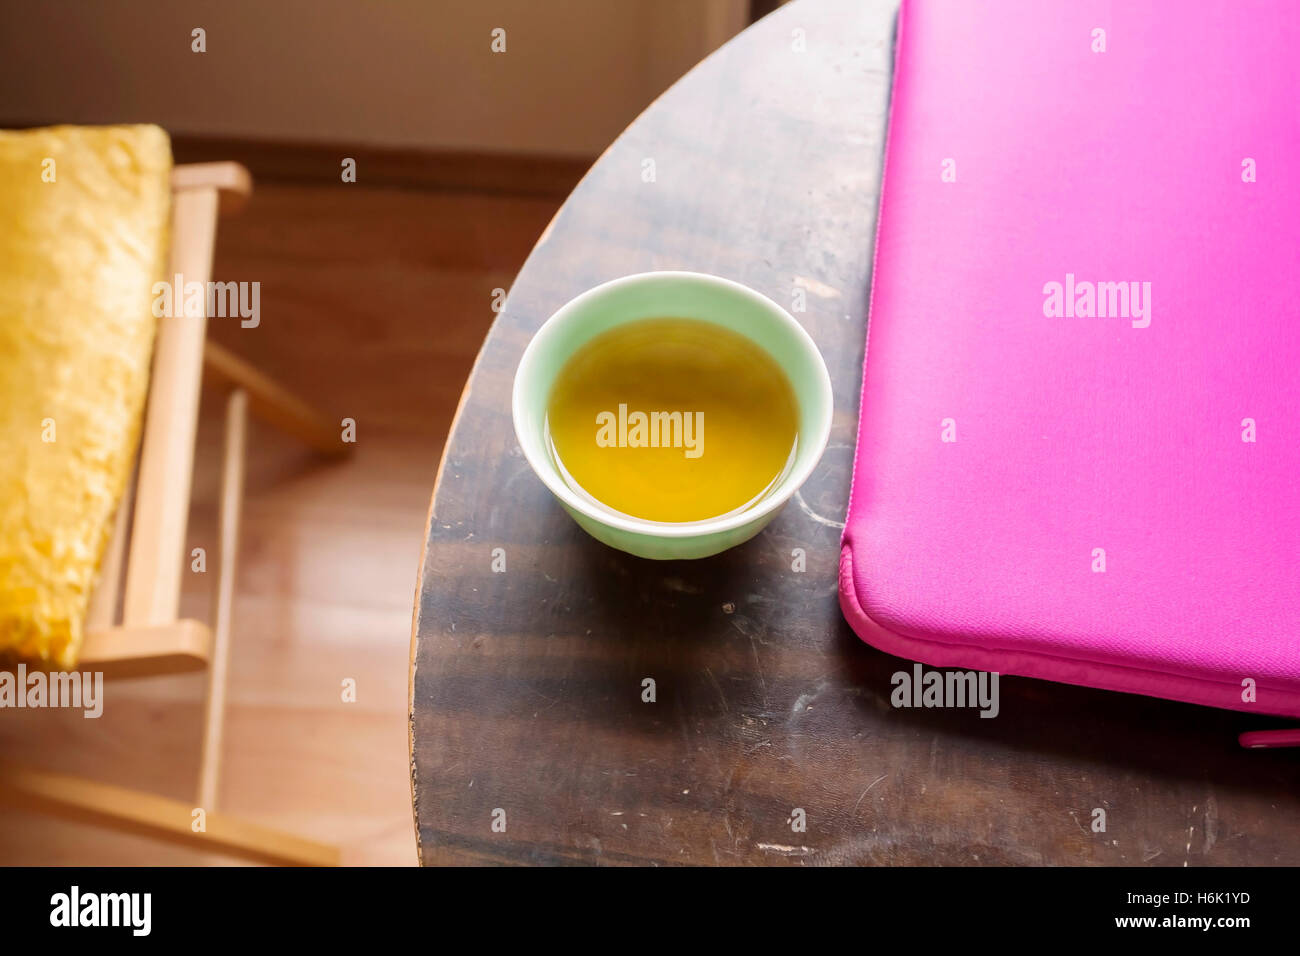 Le thé vert et l'Apple Mac Book Air dans le cas rose sur la table ronde Banque D'Images